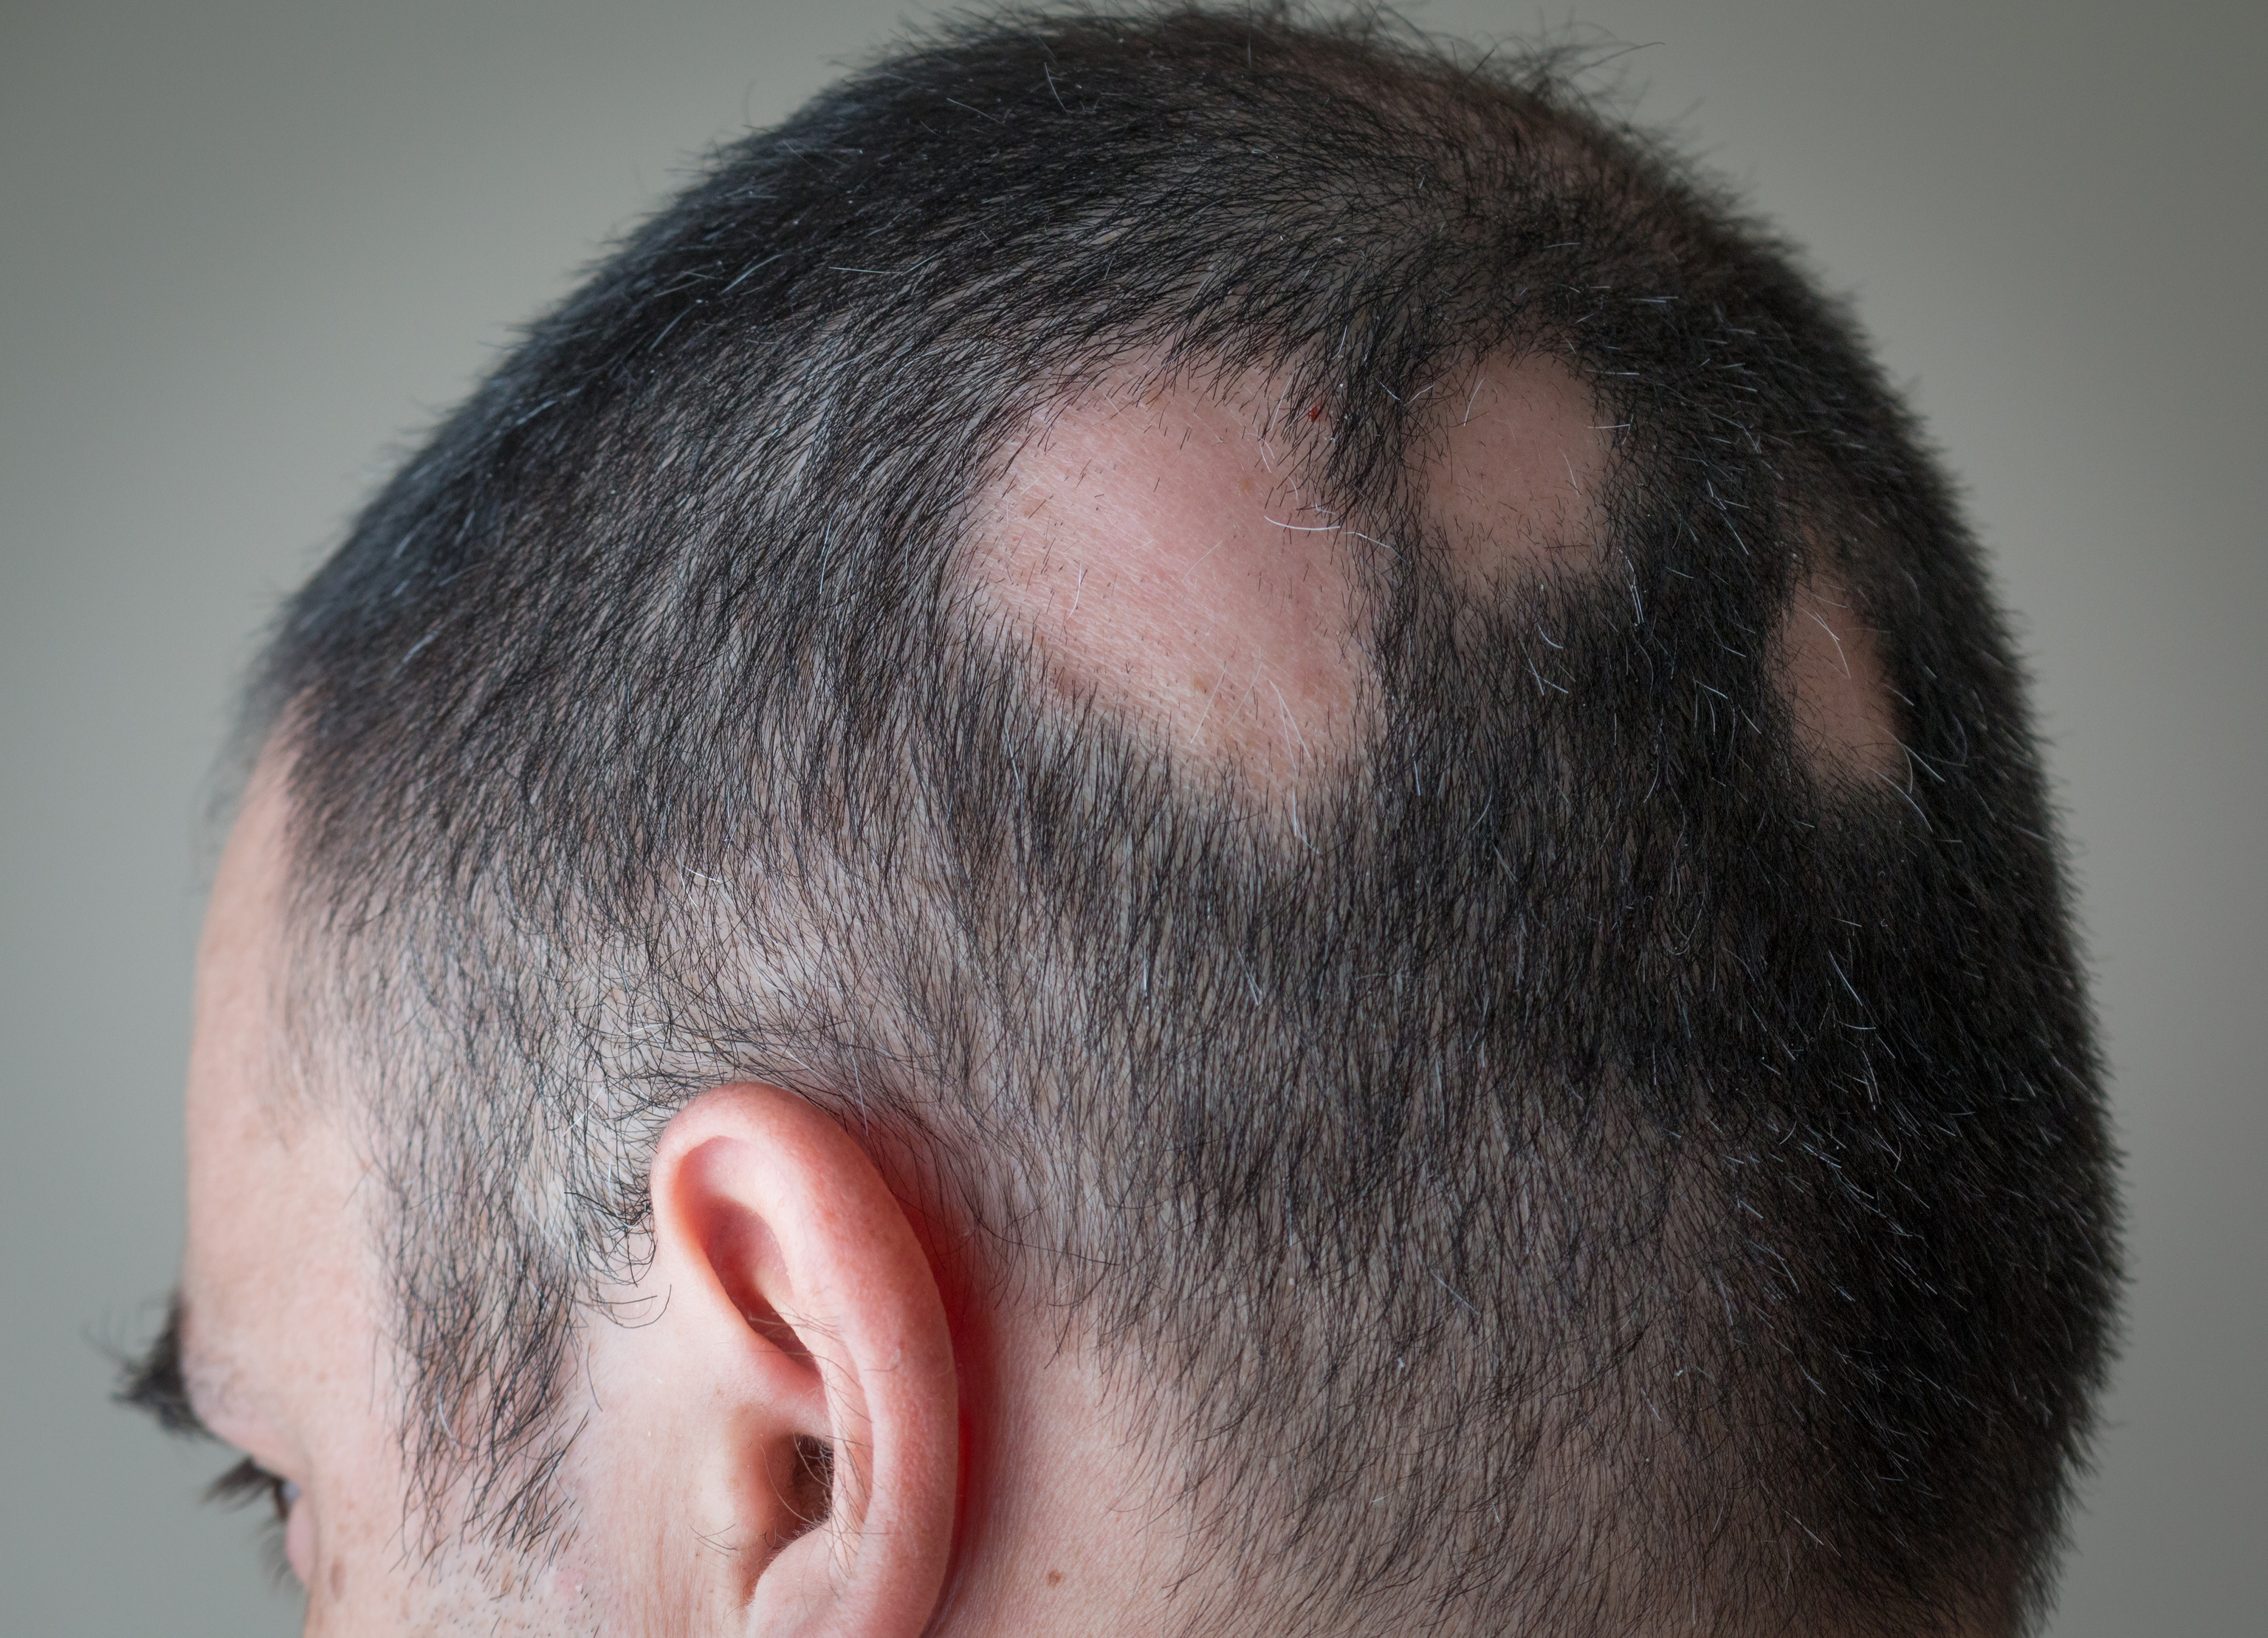 Parches redondos característicos de la alopecia areata.